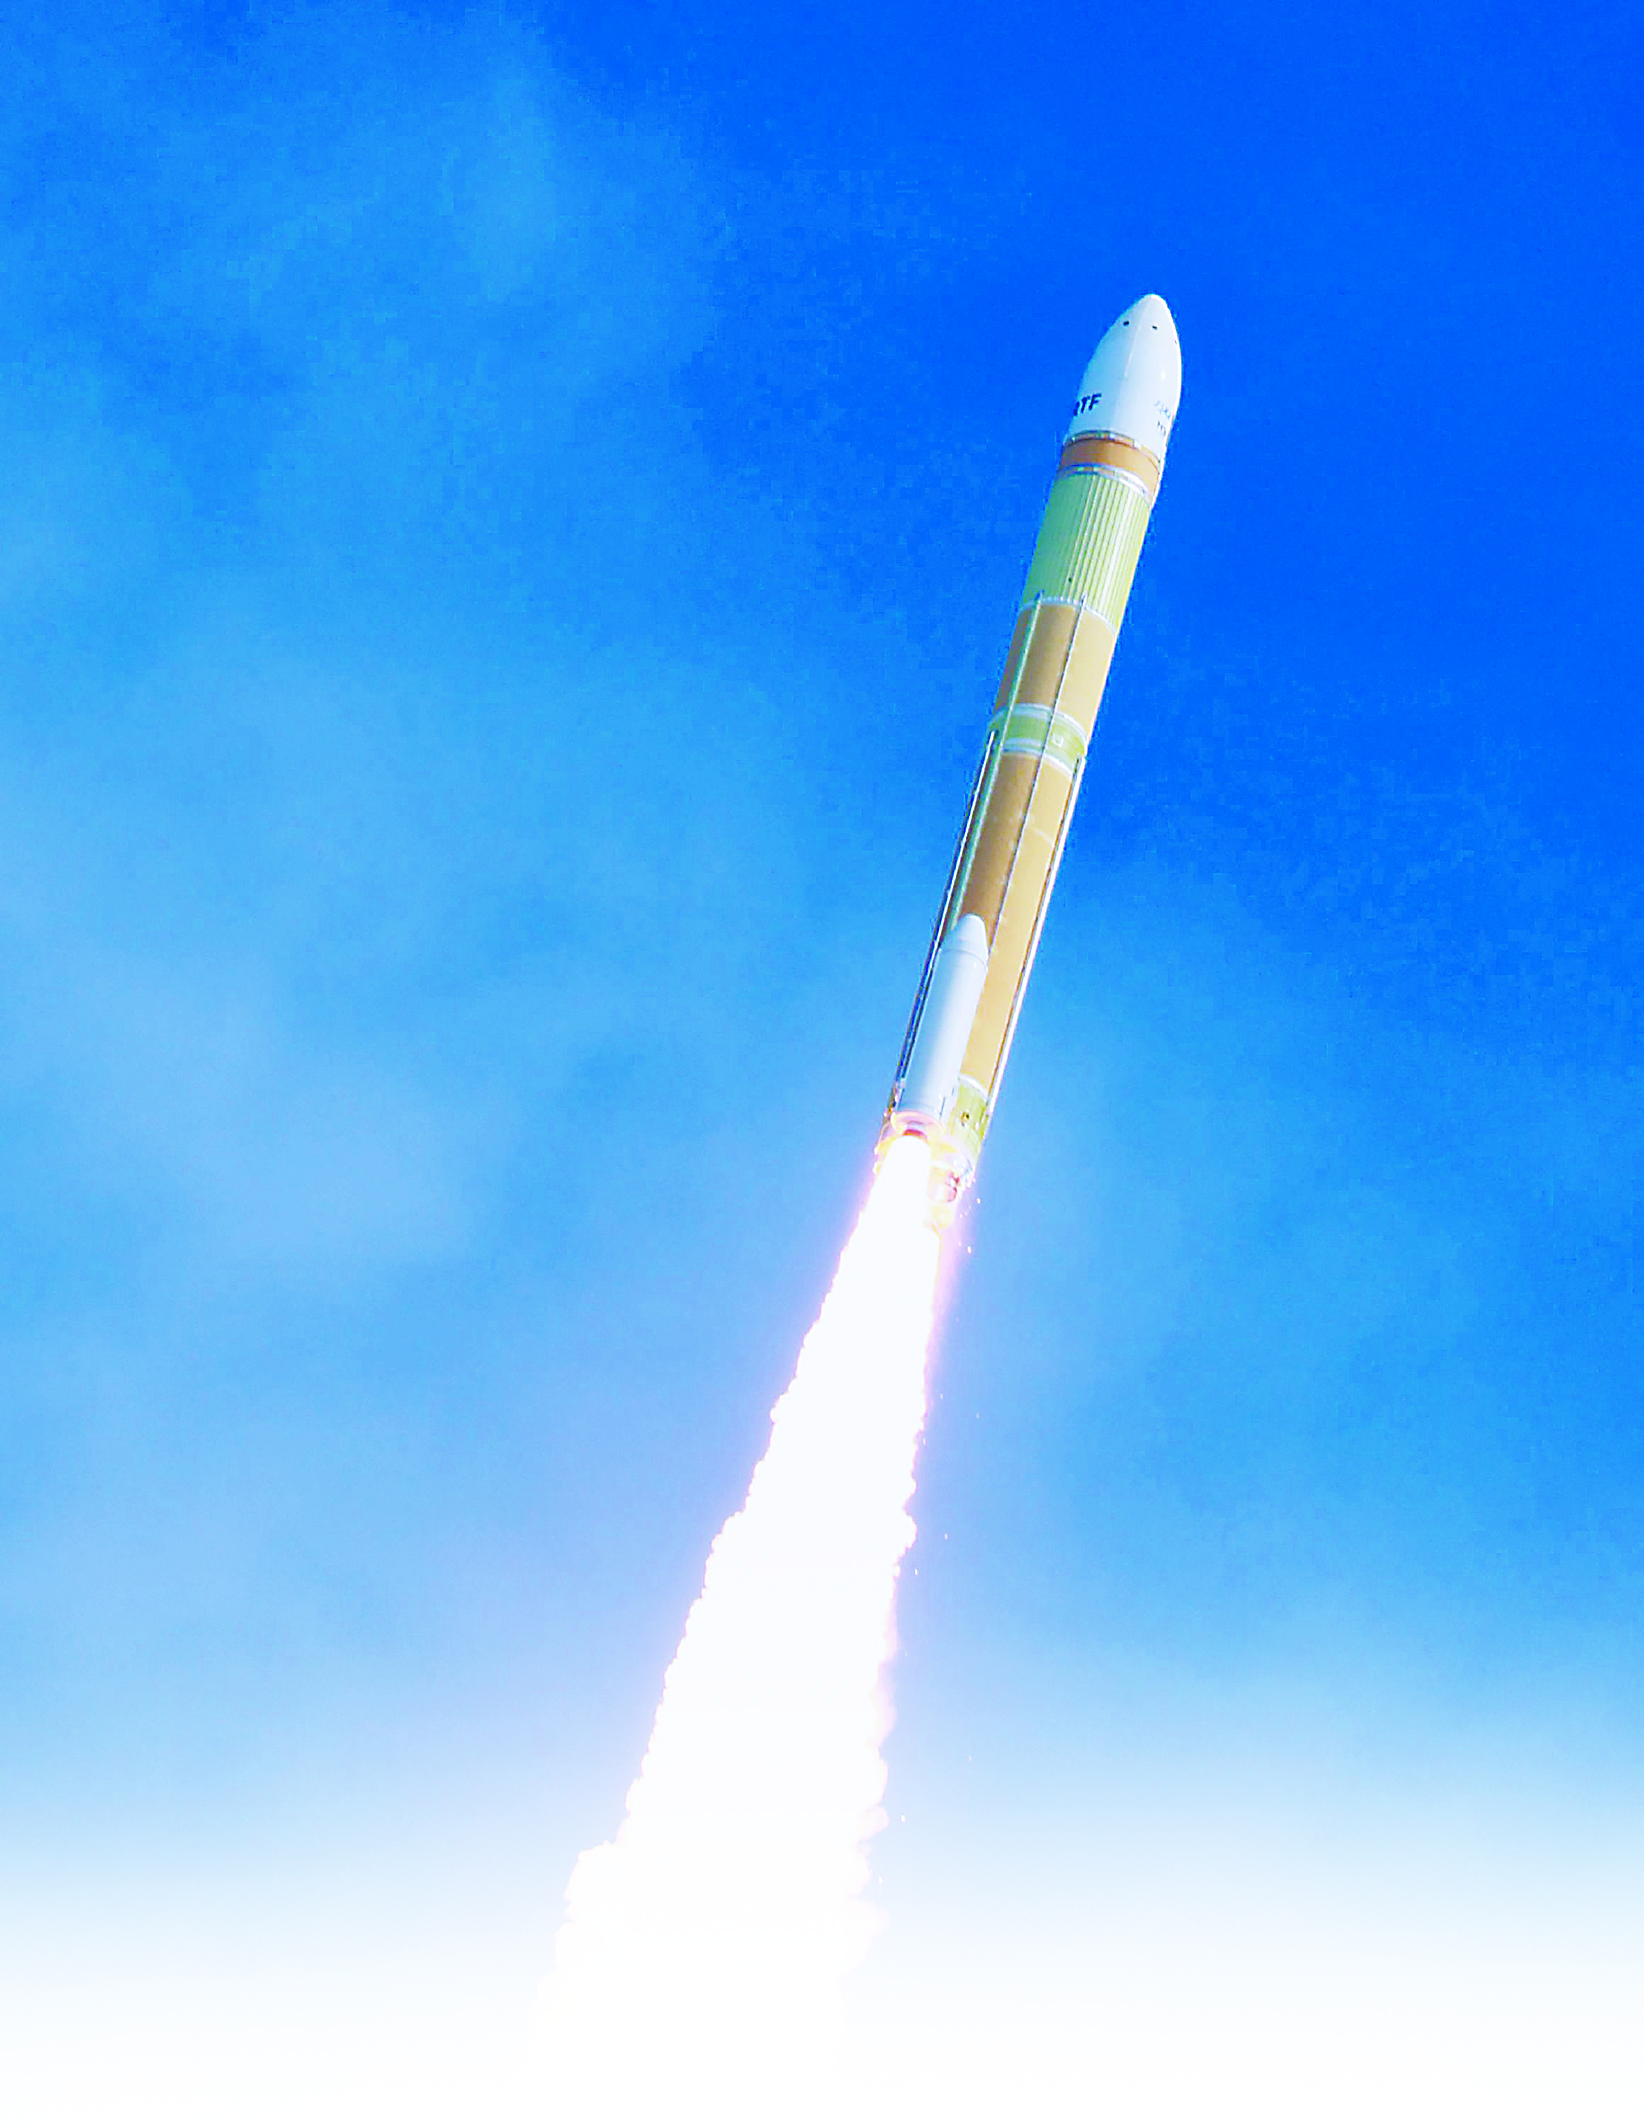 模拟卫星和两颗小型卫星的h3火箭于17日从日本种子岛宇宙中心点火发射